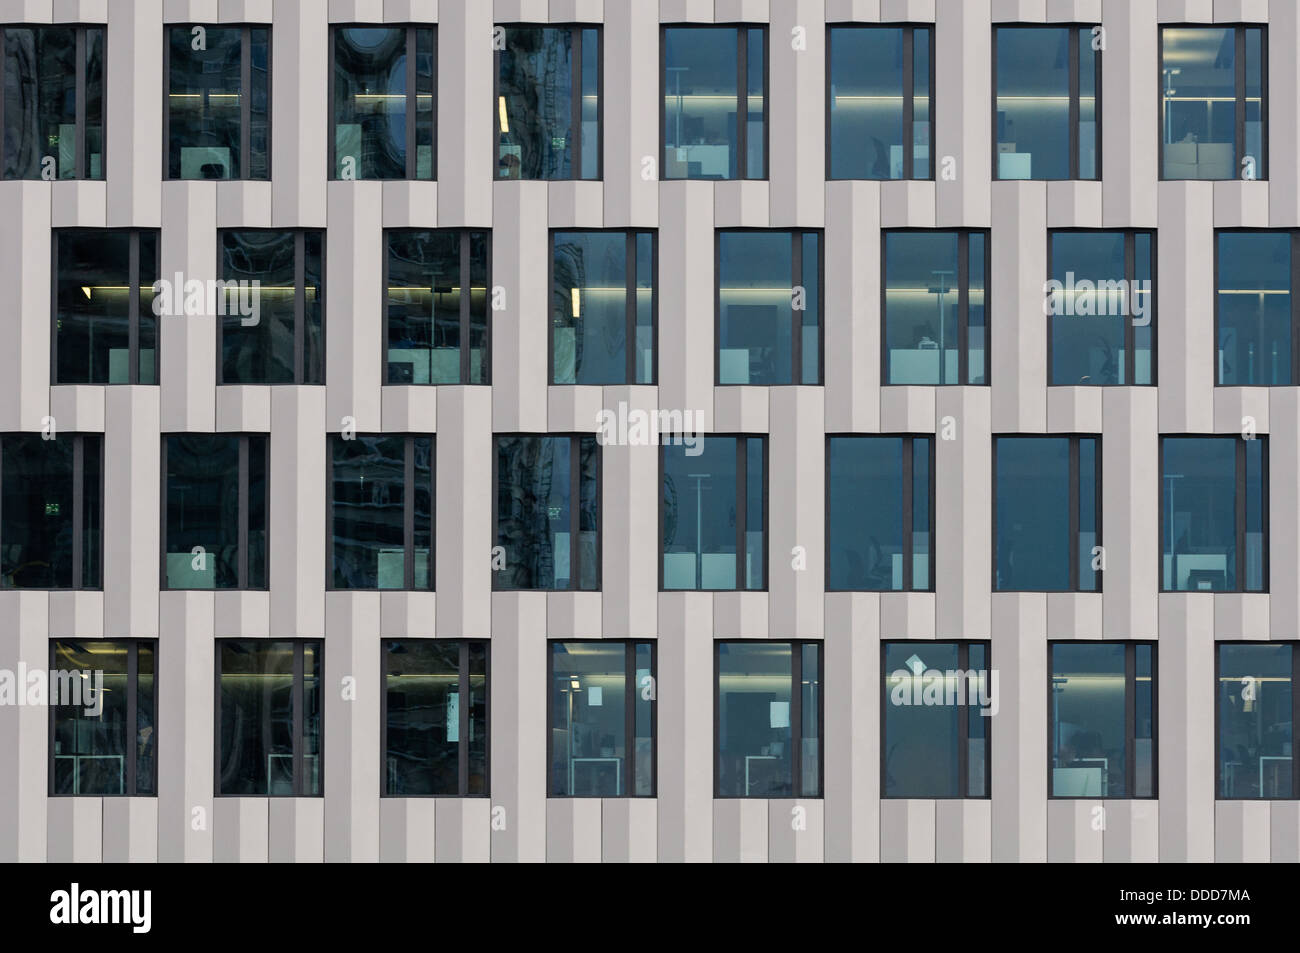 La façade de l'immeuble de bureau. Zurich, Suisse. Banque D'Images